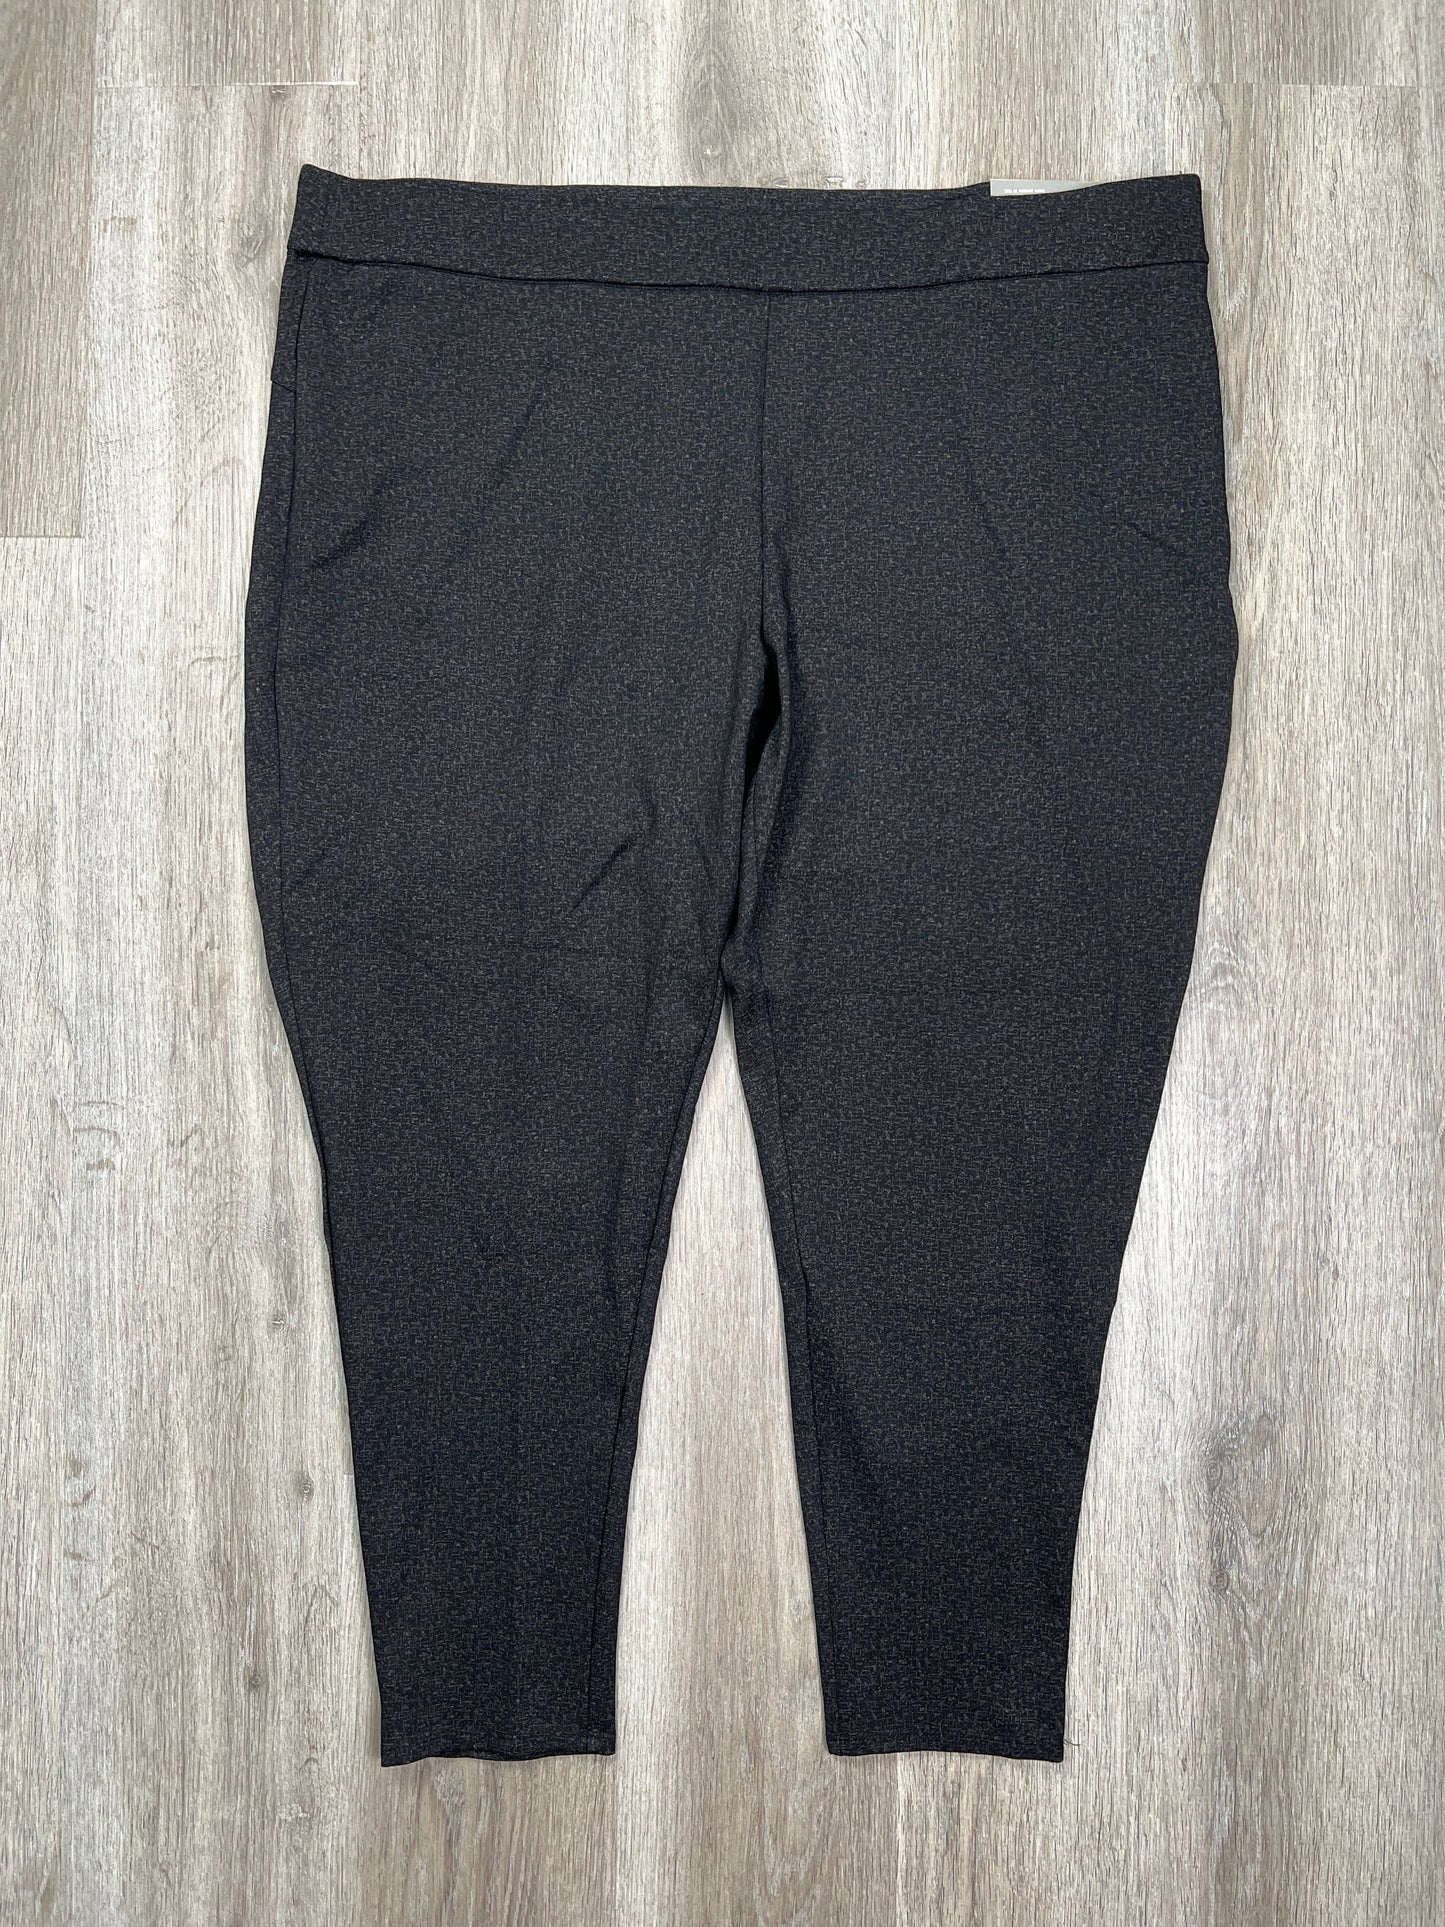 Black Pants Leggings Cj Banks, Size 3x